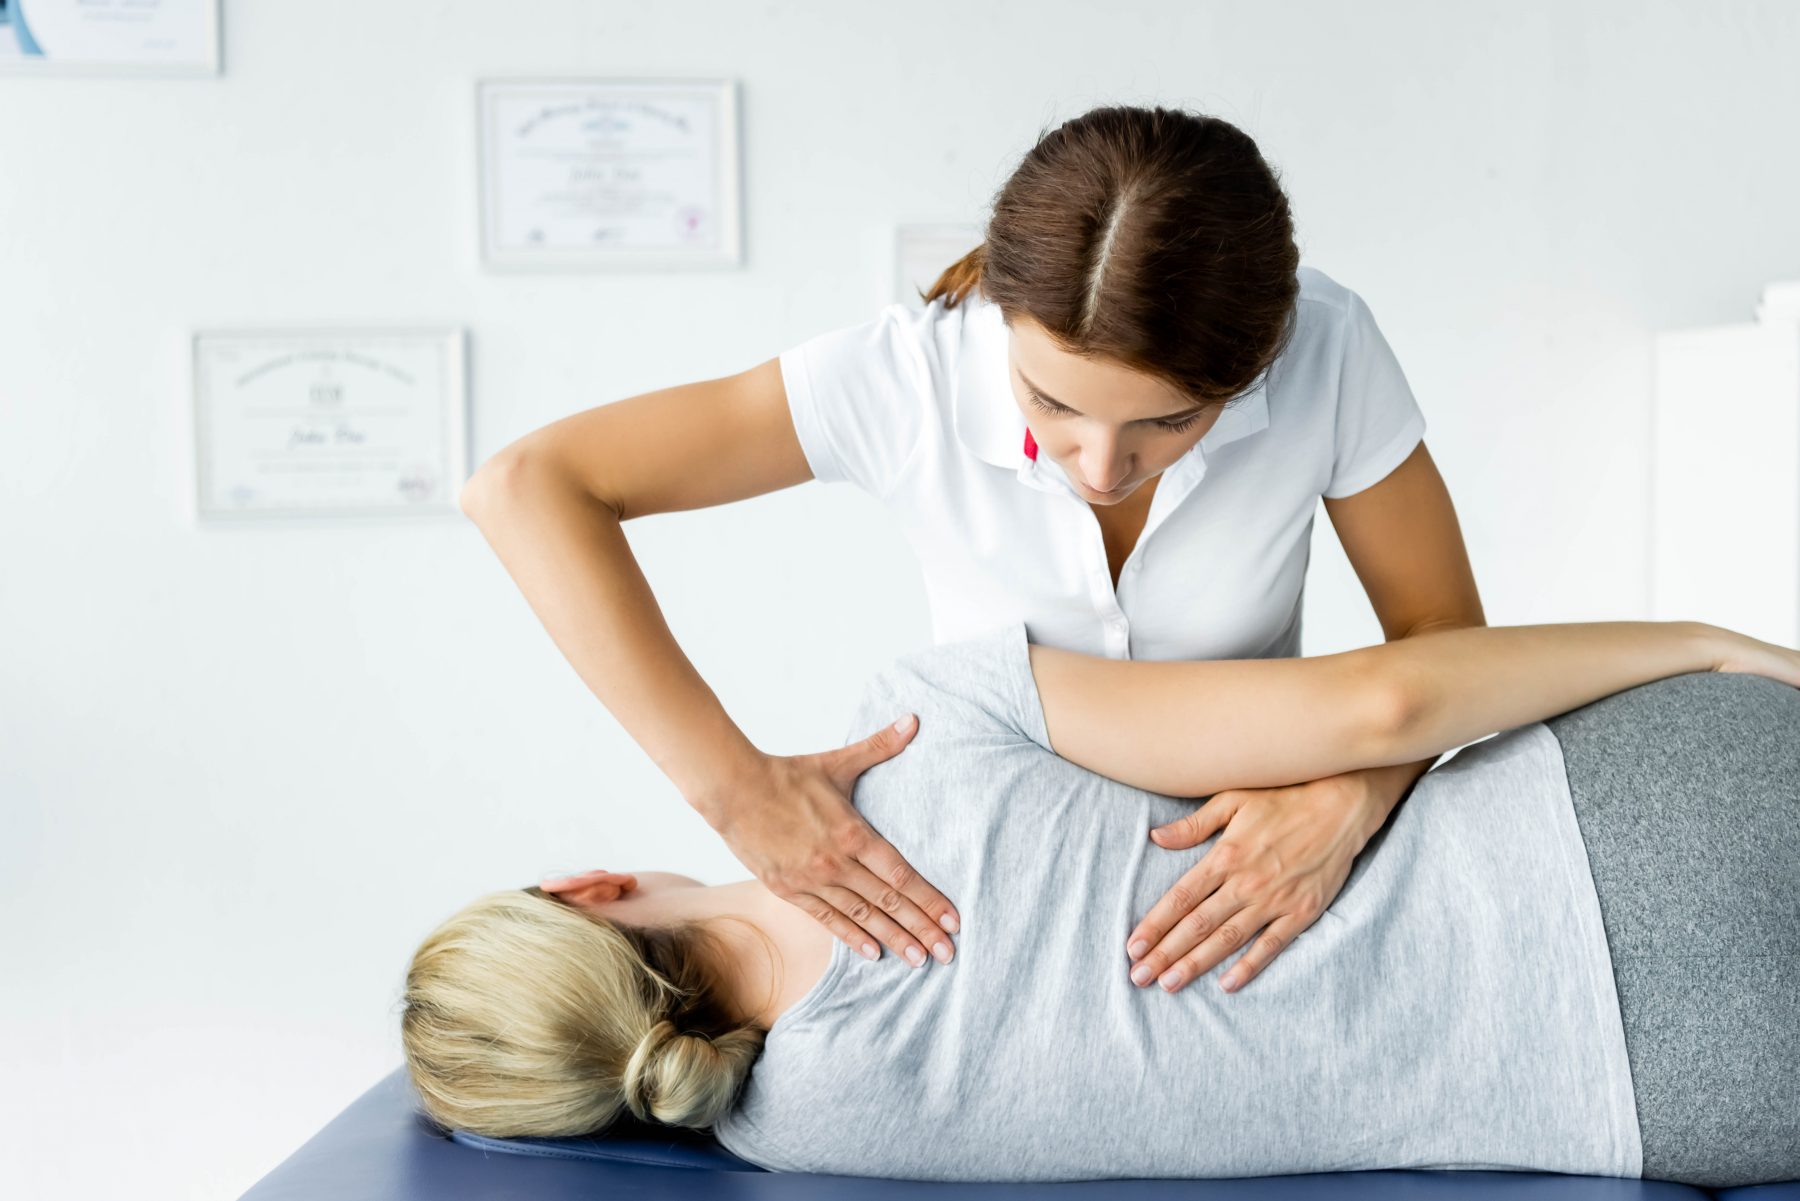 Patient receiving chiropractic services